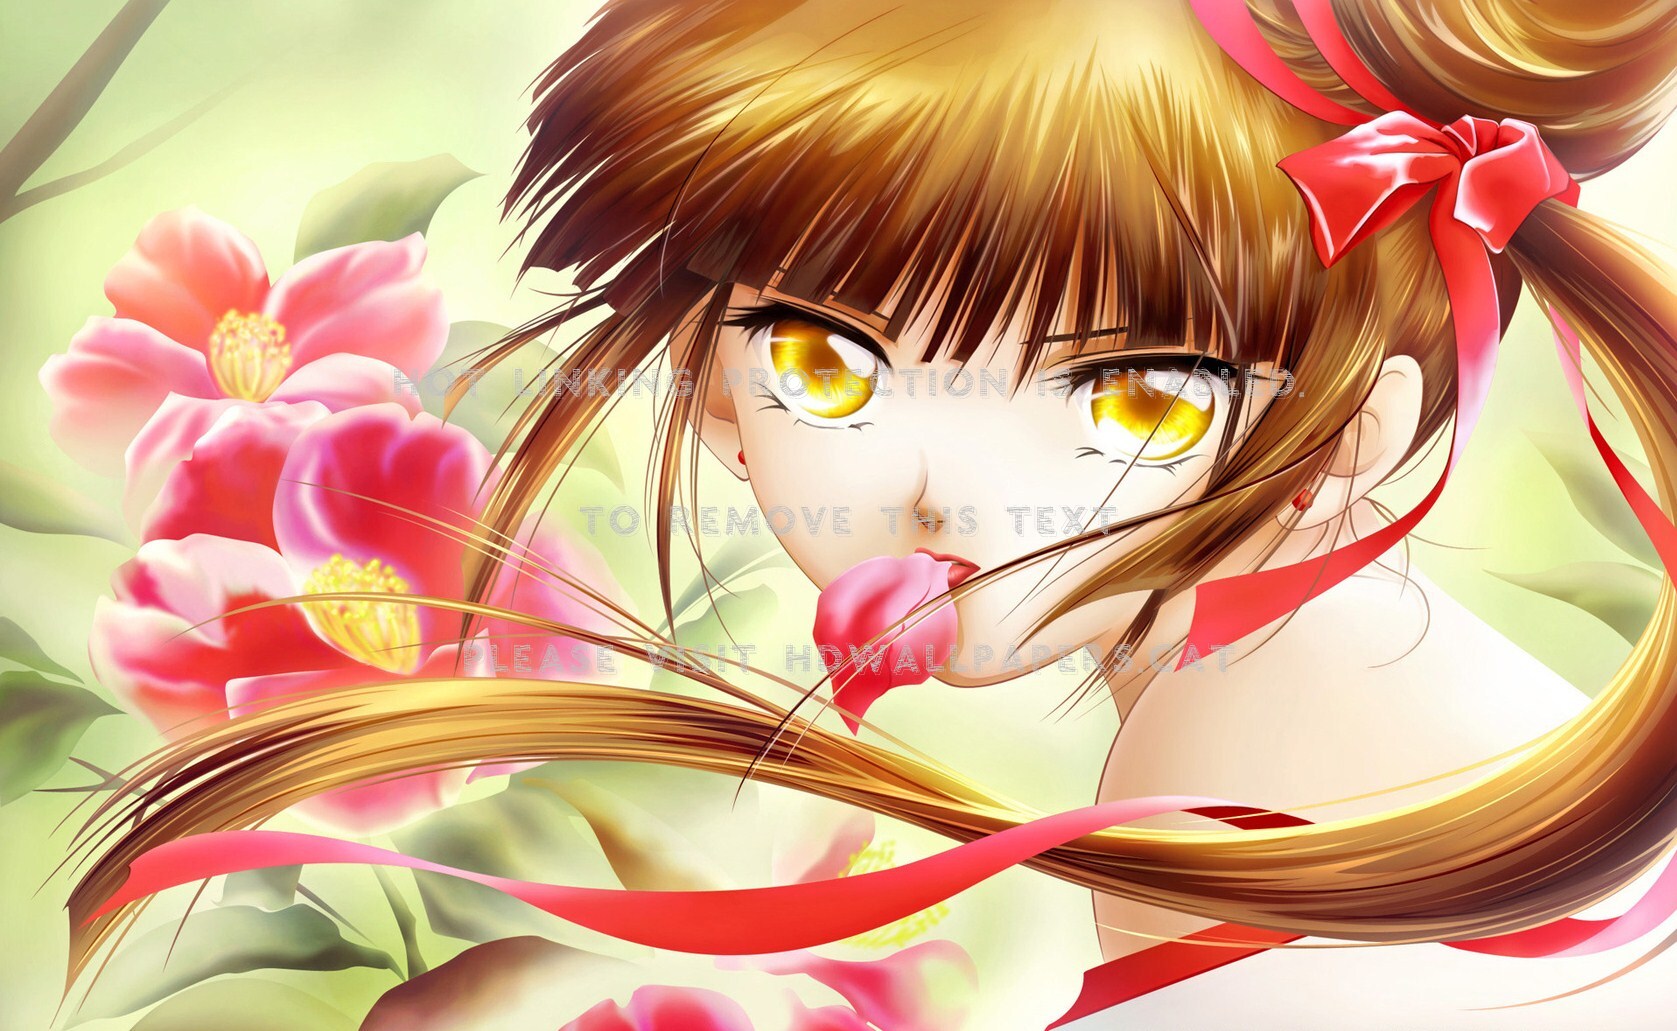 Miyu Vampire Anime Princess - Anime Vampire Princess Miyu - HD Wallpaper 